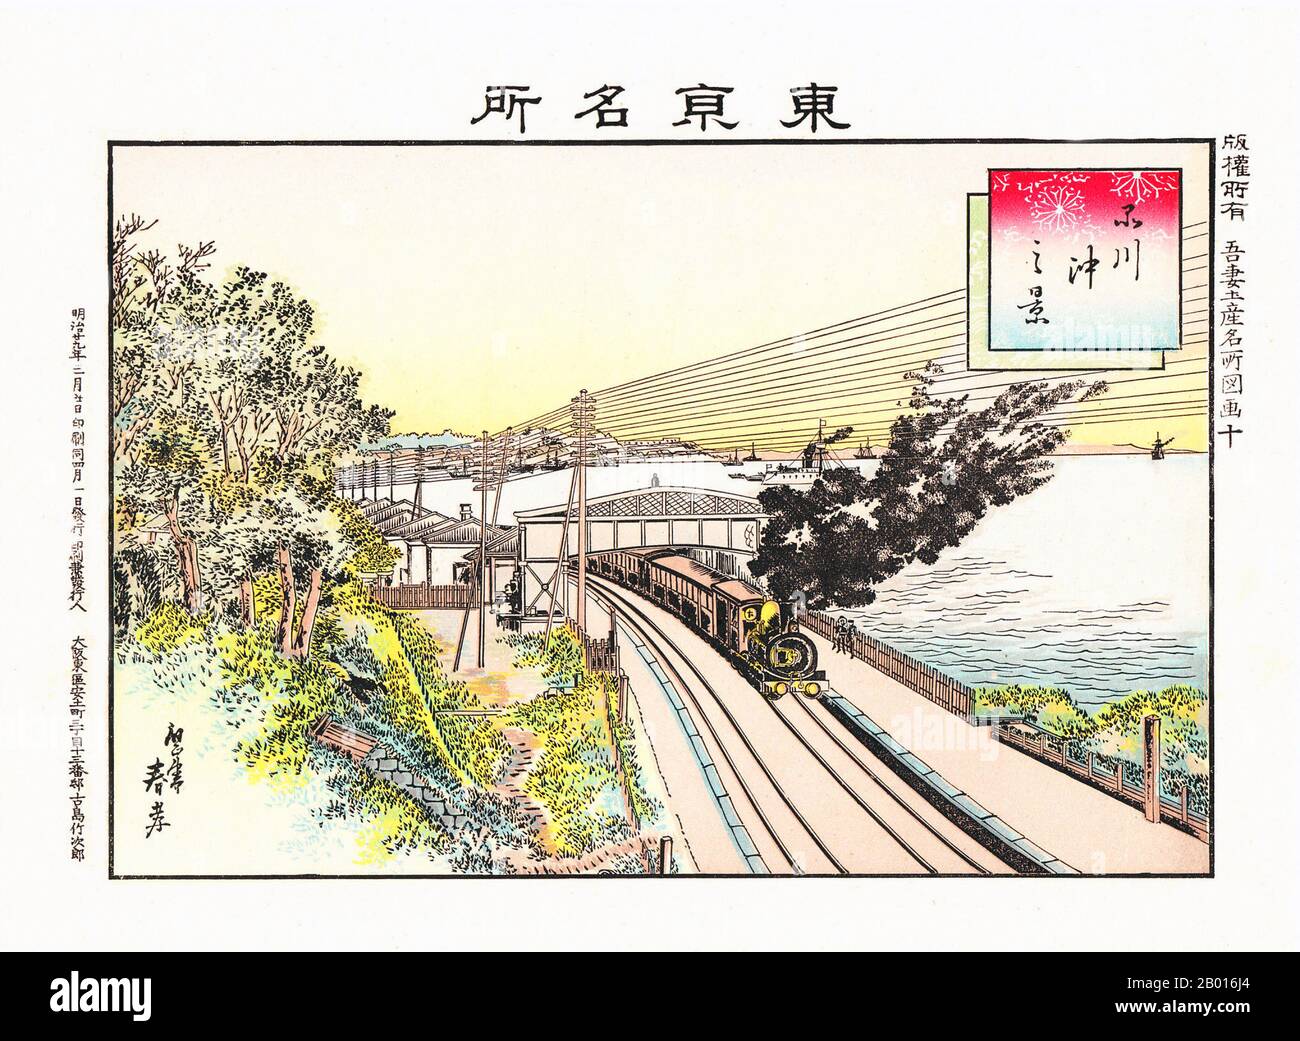 Japan: „eine Dampflokomotive in der Nähe von Tokio“. Ukiyo-e Holzschnitt, 1896. Nippon Railway (Nippon Tetsudō) war die erste private Eisenbahngesellschaft in der Geschichte Japans. Das Unternehmen baute Fernleitungen, die Tokio mit der nordöstlichen Region Tōhoku verbinden. Nach der Nationalisierung im Jahr 1906 geriet der Großteil der Strecken unter die Kontrolle der japanischen Staatsbahnen, und viele werden heute von der East Japan Railway Company betrieben. Stockfoto